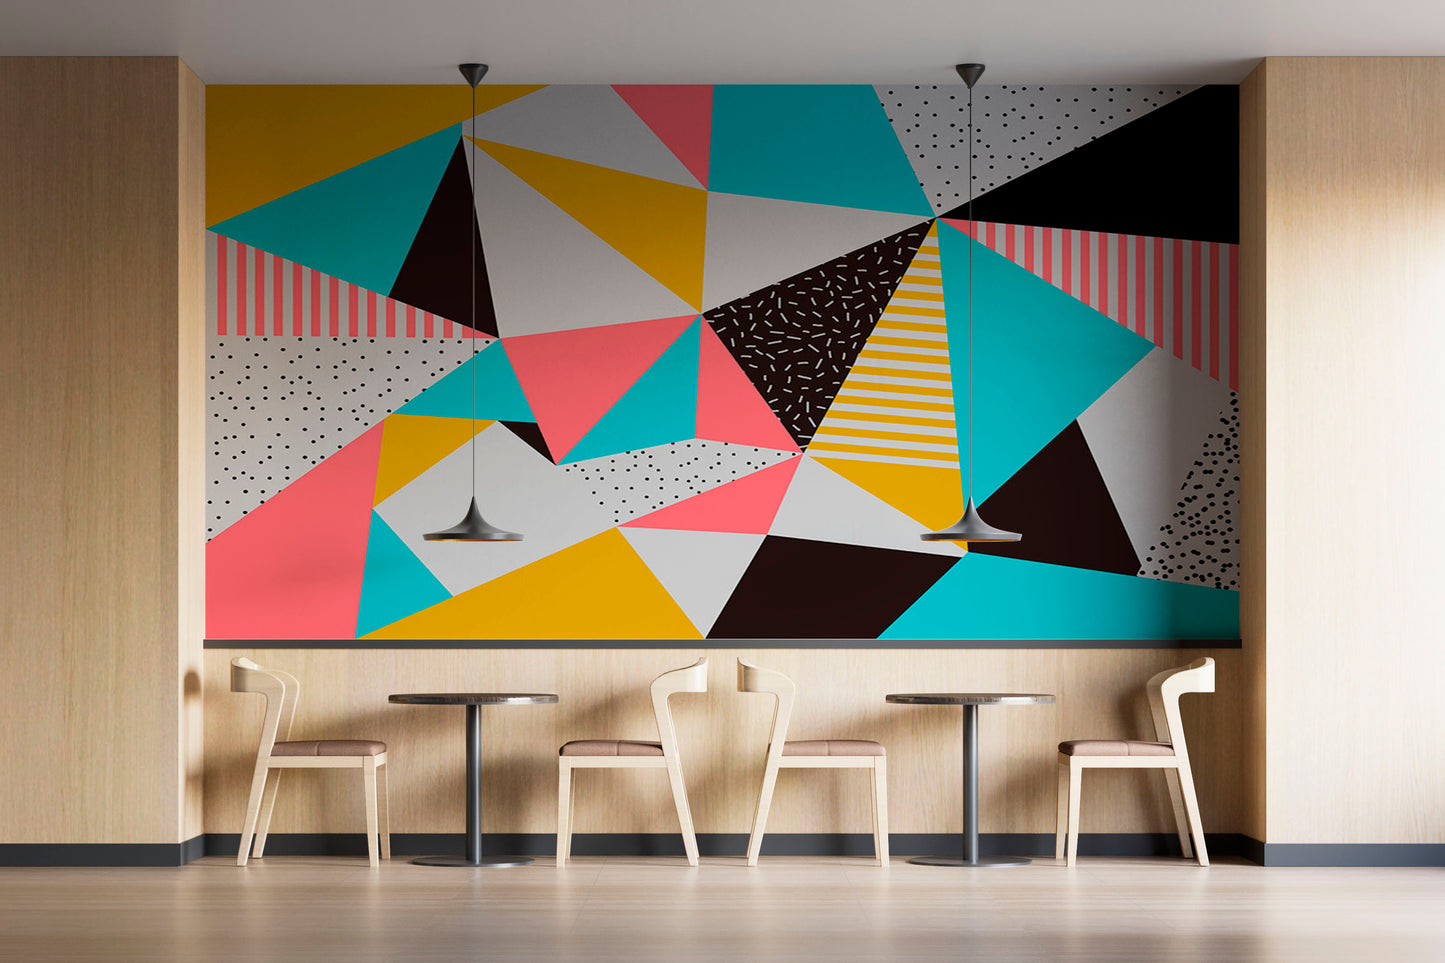 Papel Mural / Geometric Wall